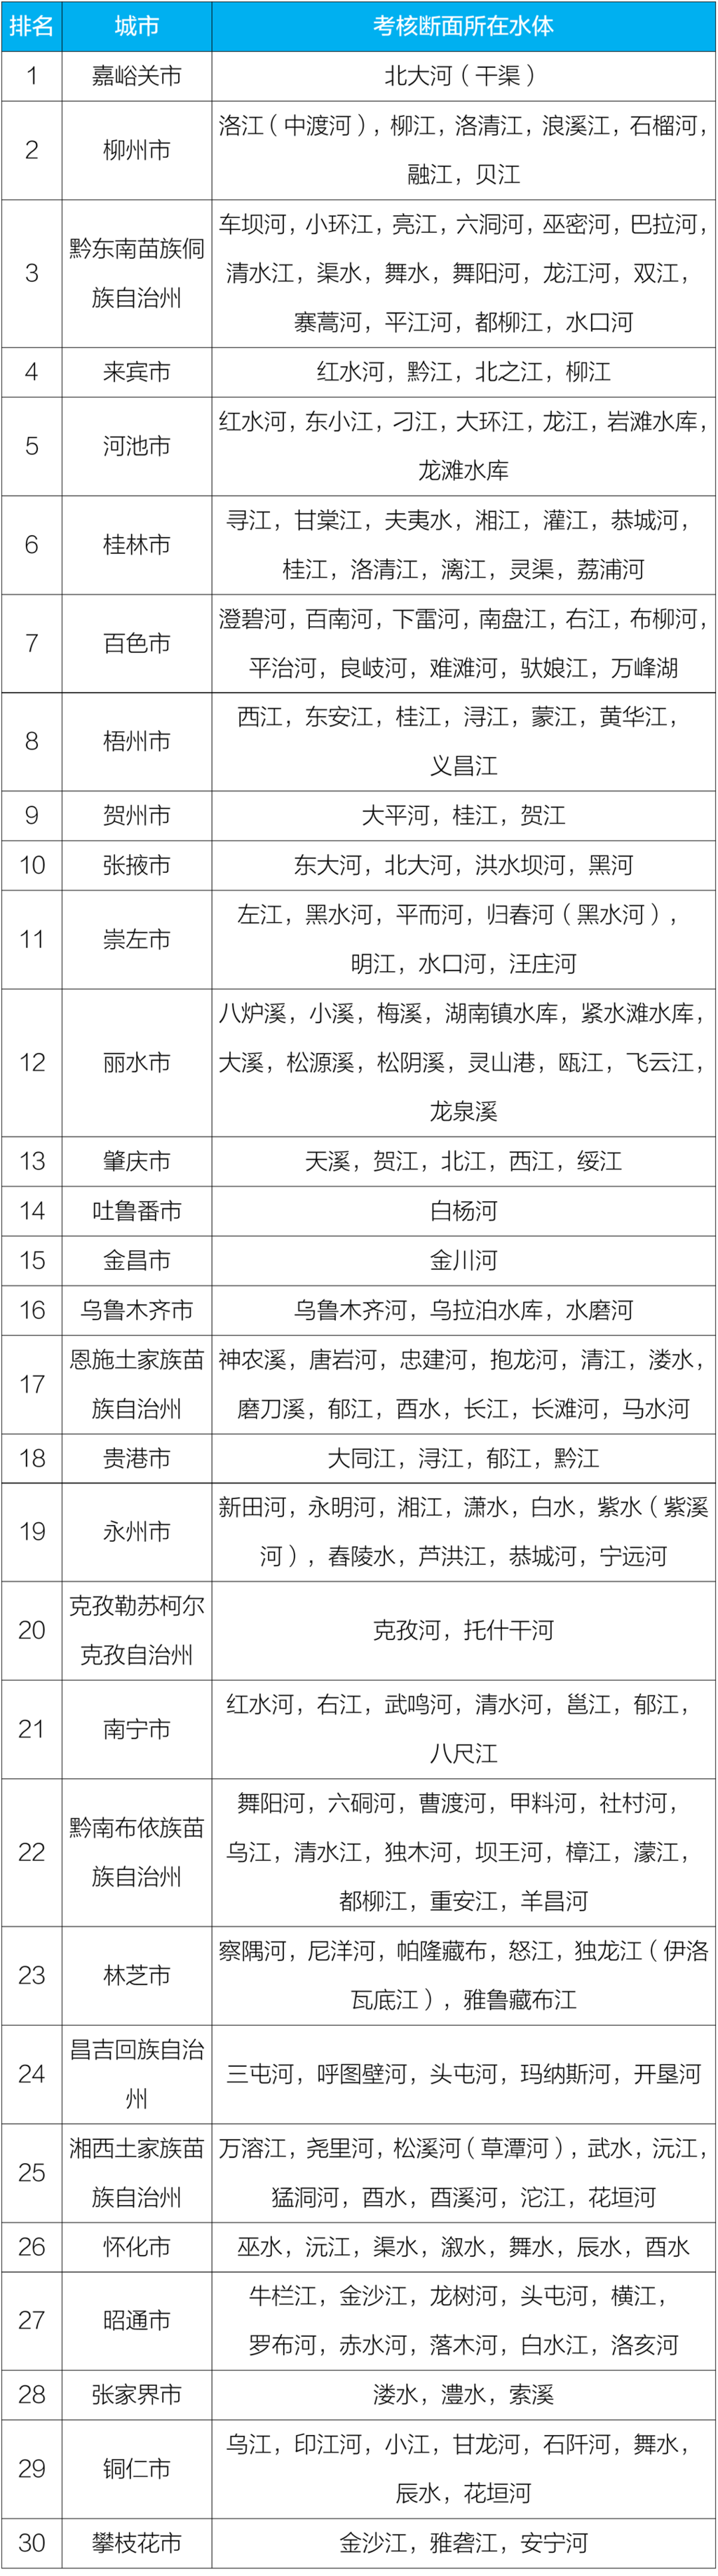 水质排行_今年前7个月,柳州水质排名全国第二,领衔广西